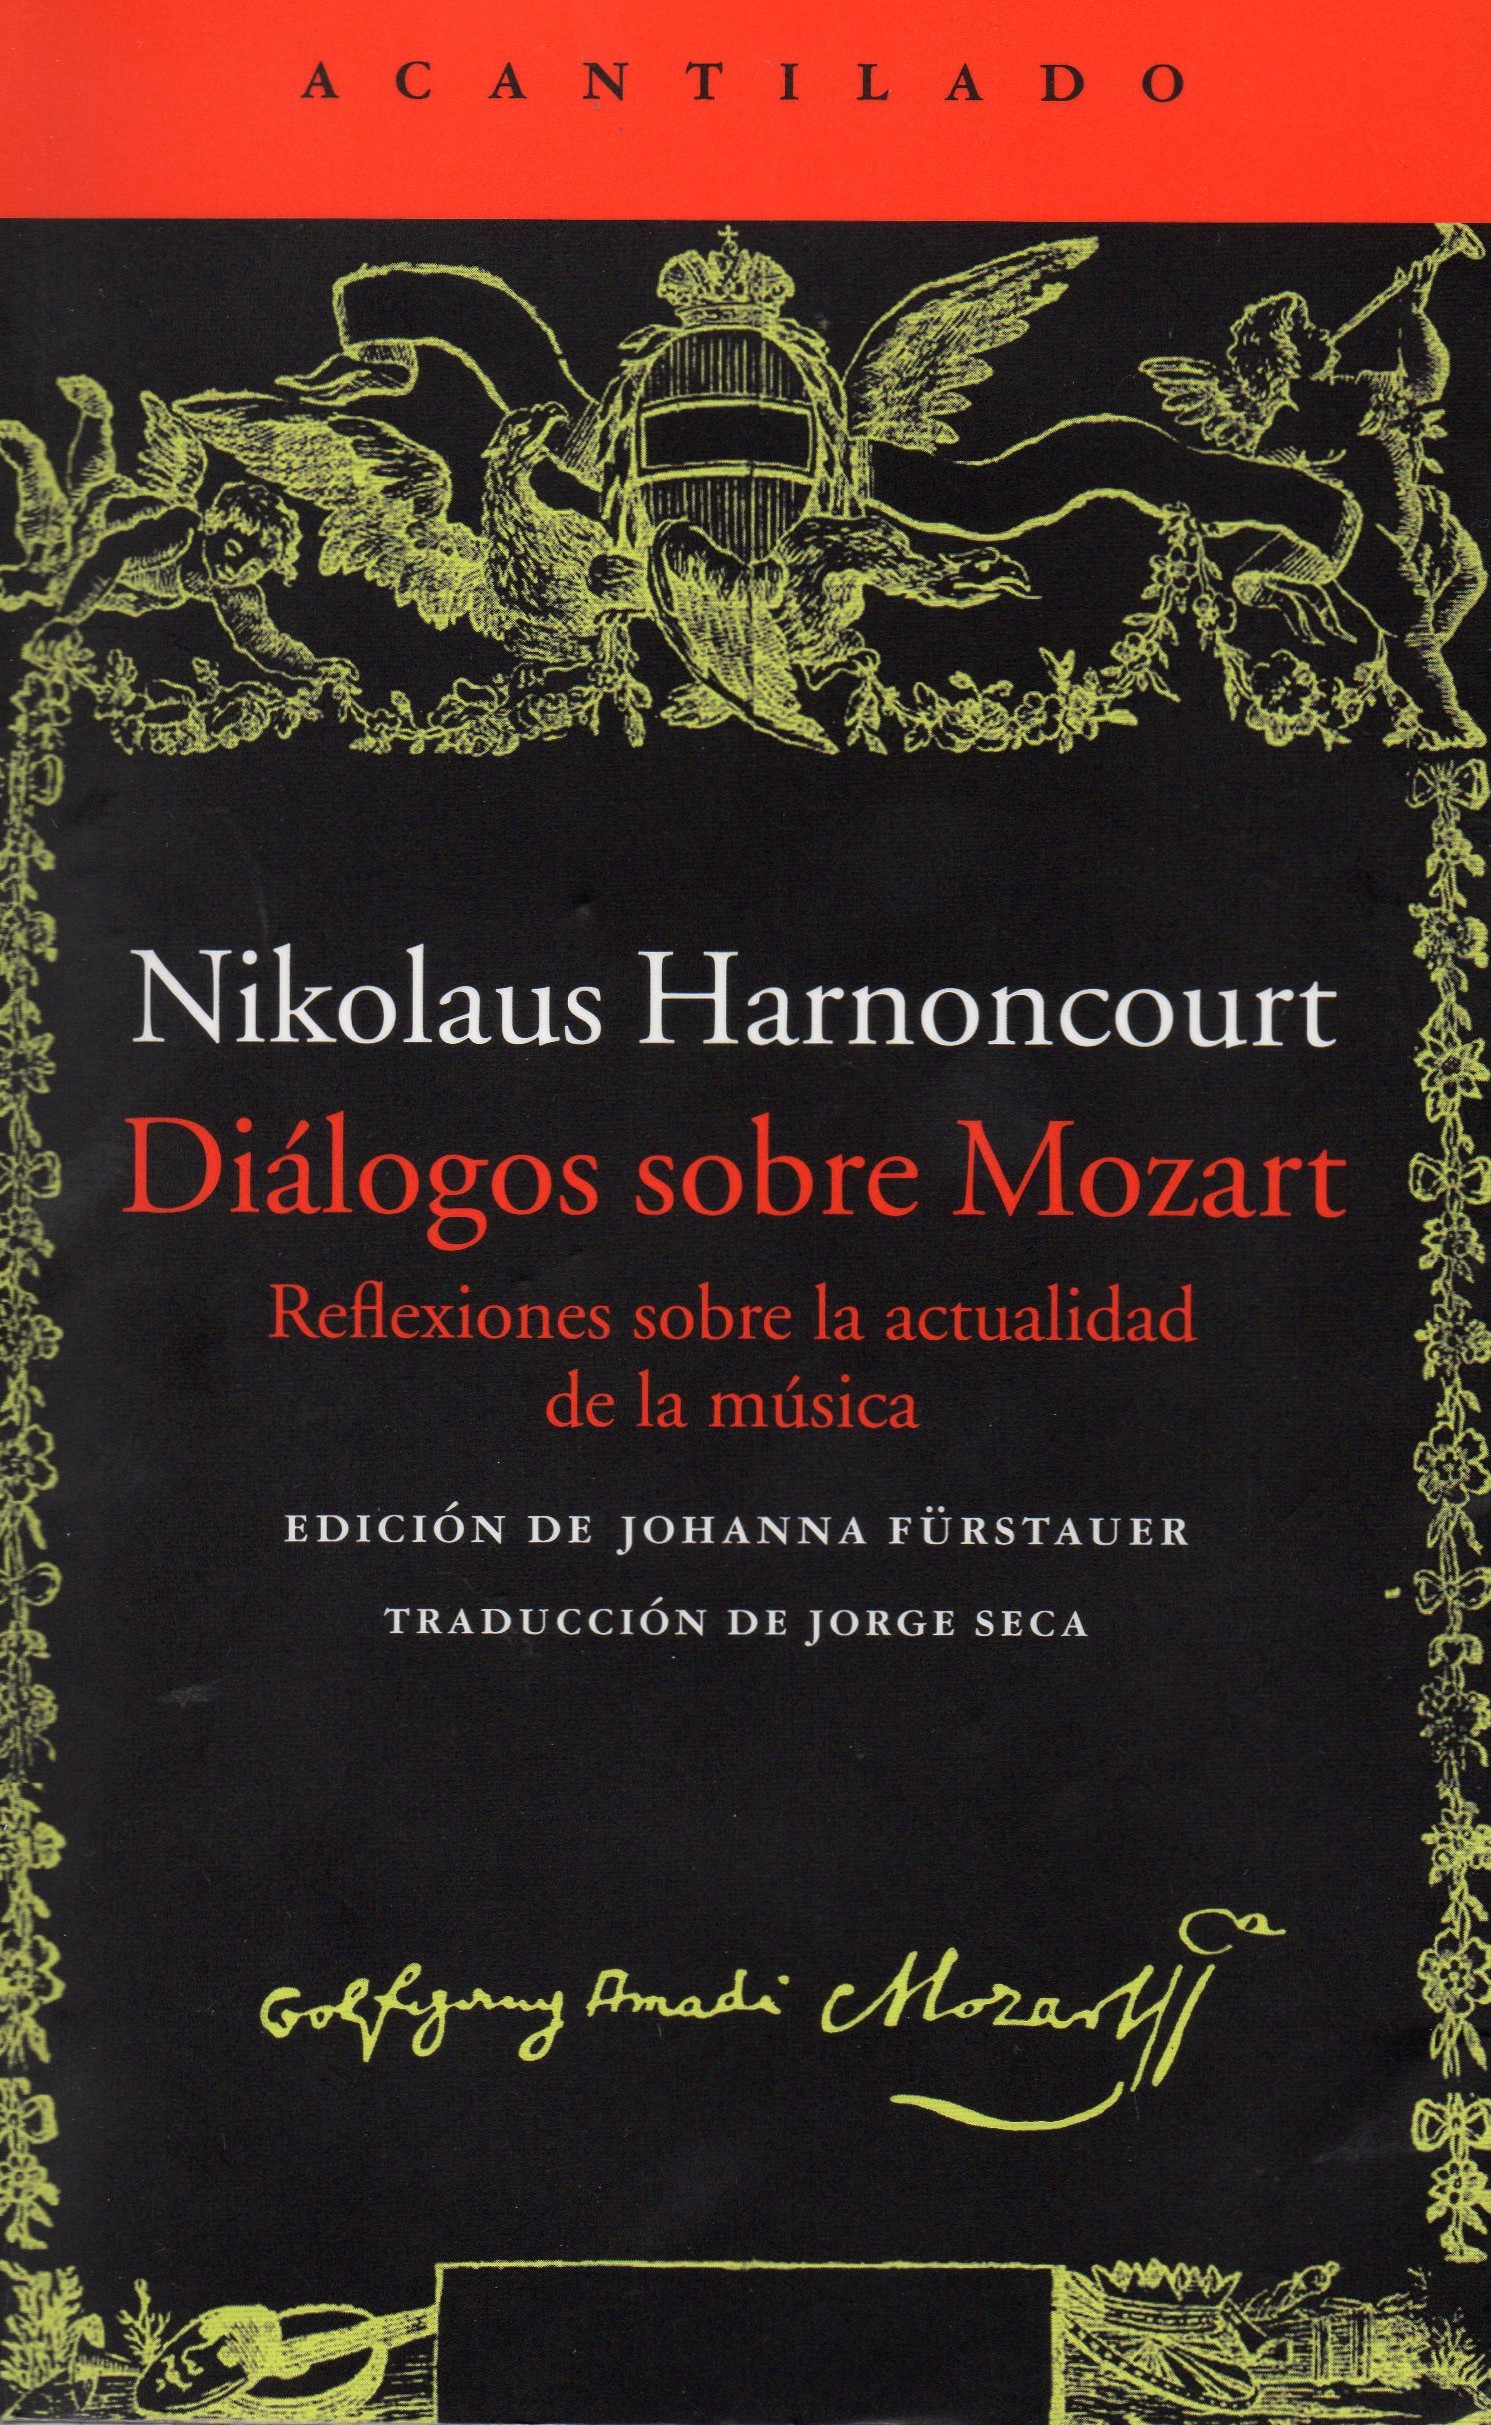 Dilogos sobre Mozart de Harnoncourt